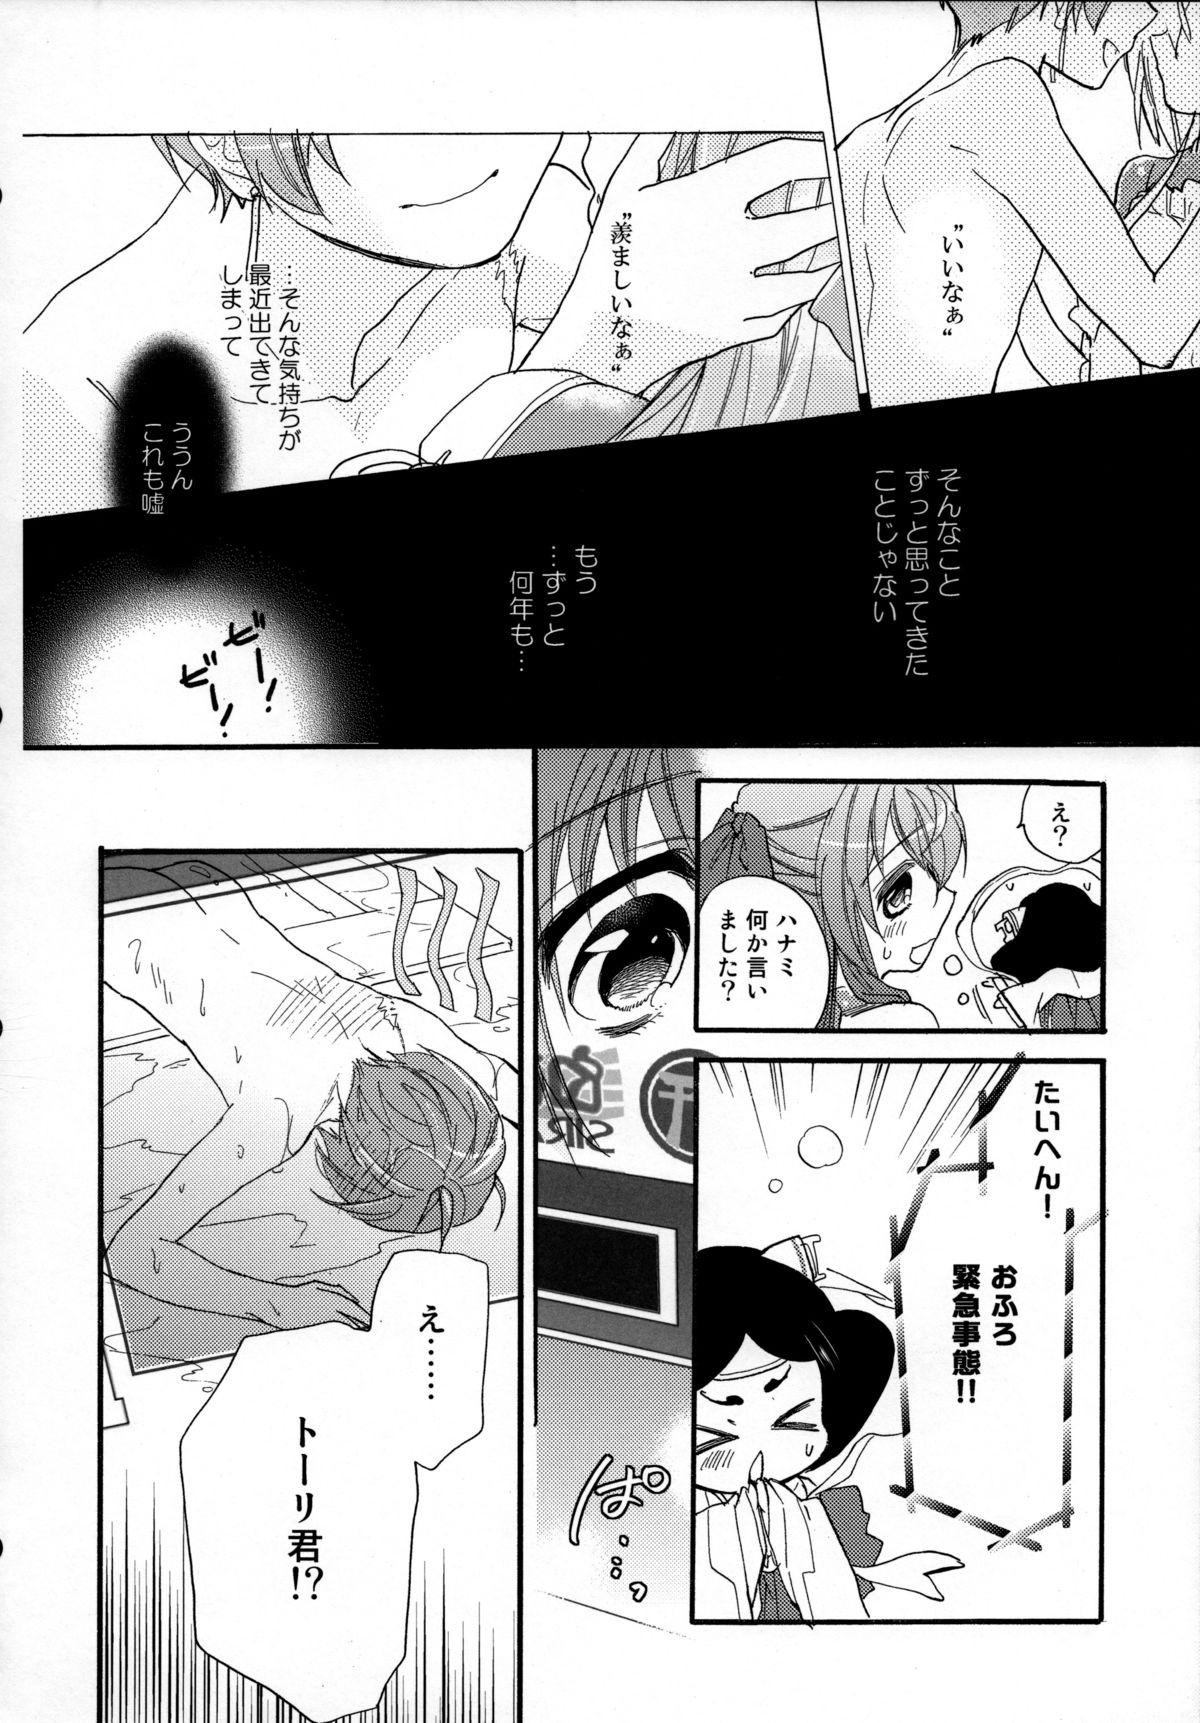 Blows Asama Tomo no Junjou - Kyoukai senjou no horizon Hardfuck - Page 11